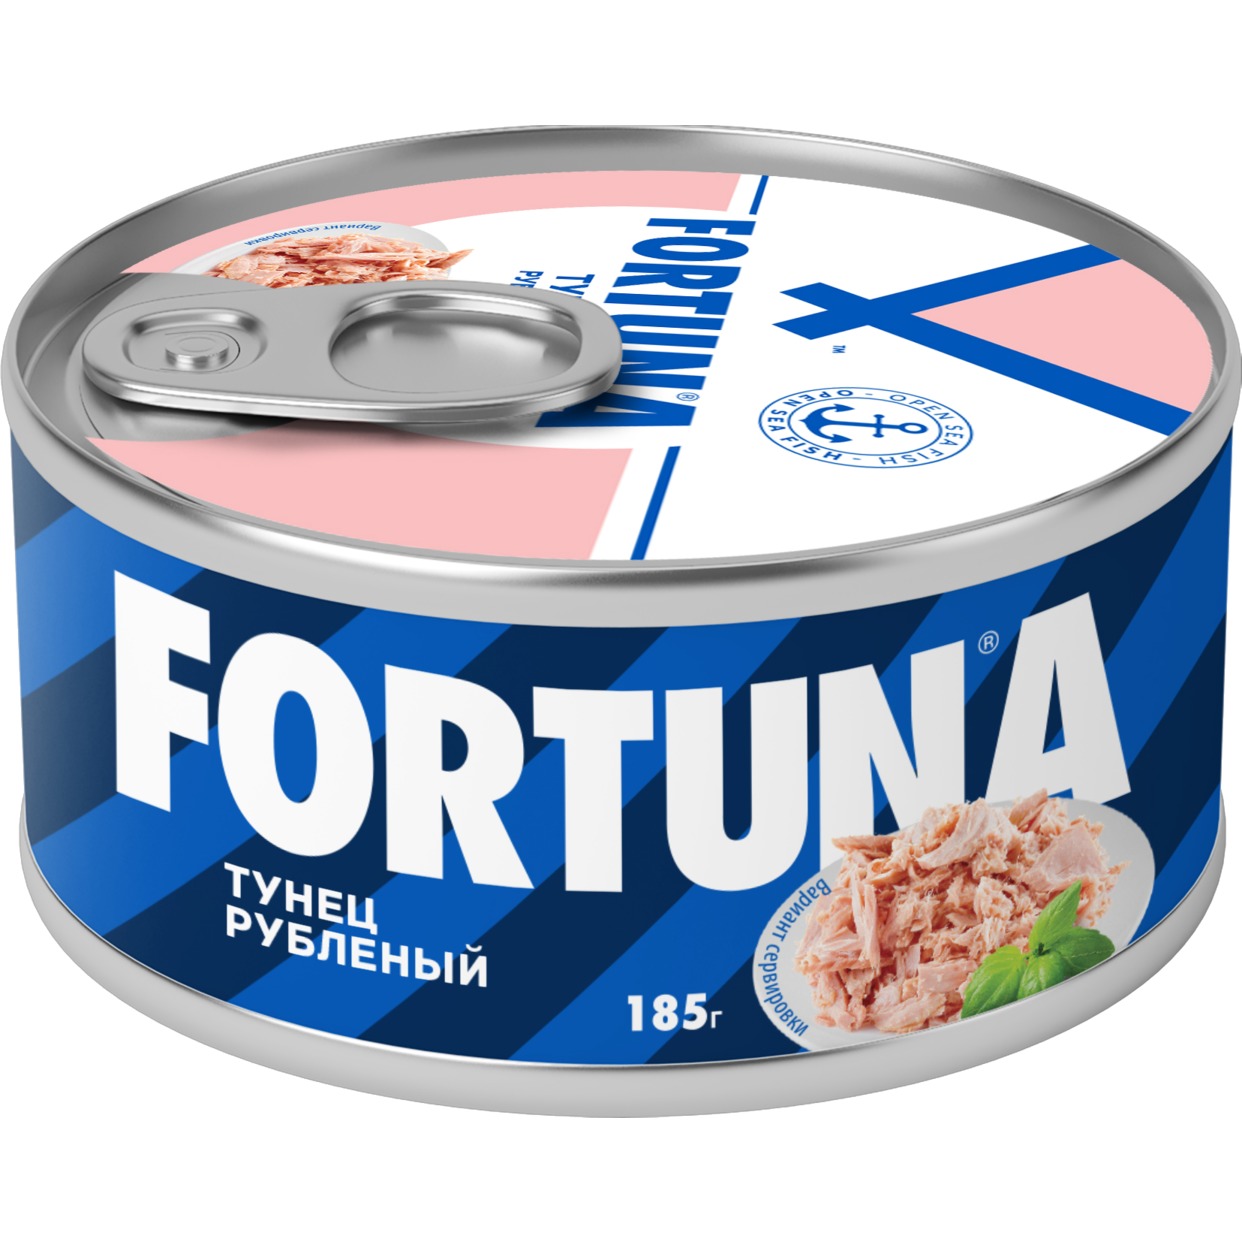 FORTUNA консервы рыбные стерилизованные тунец полосатый рубленый 185 г по акции в Пятерочке